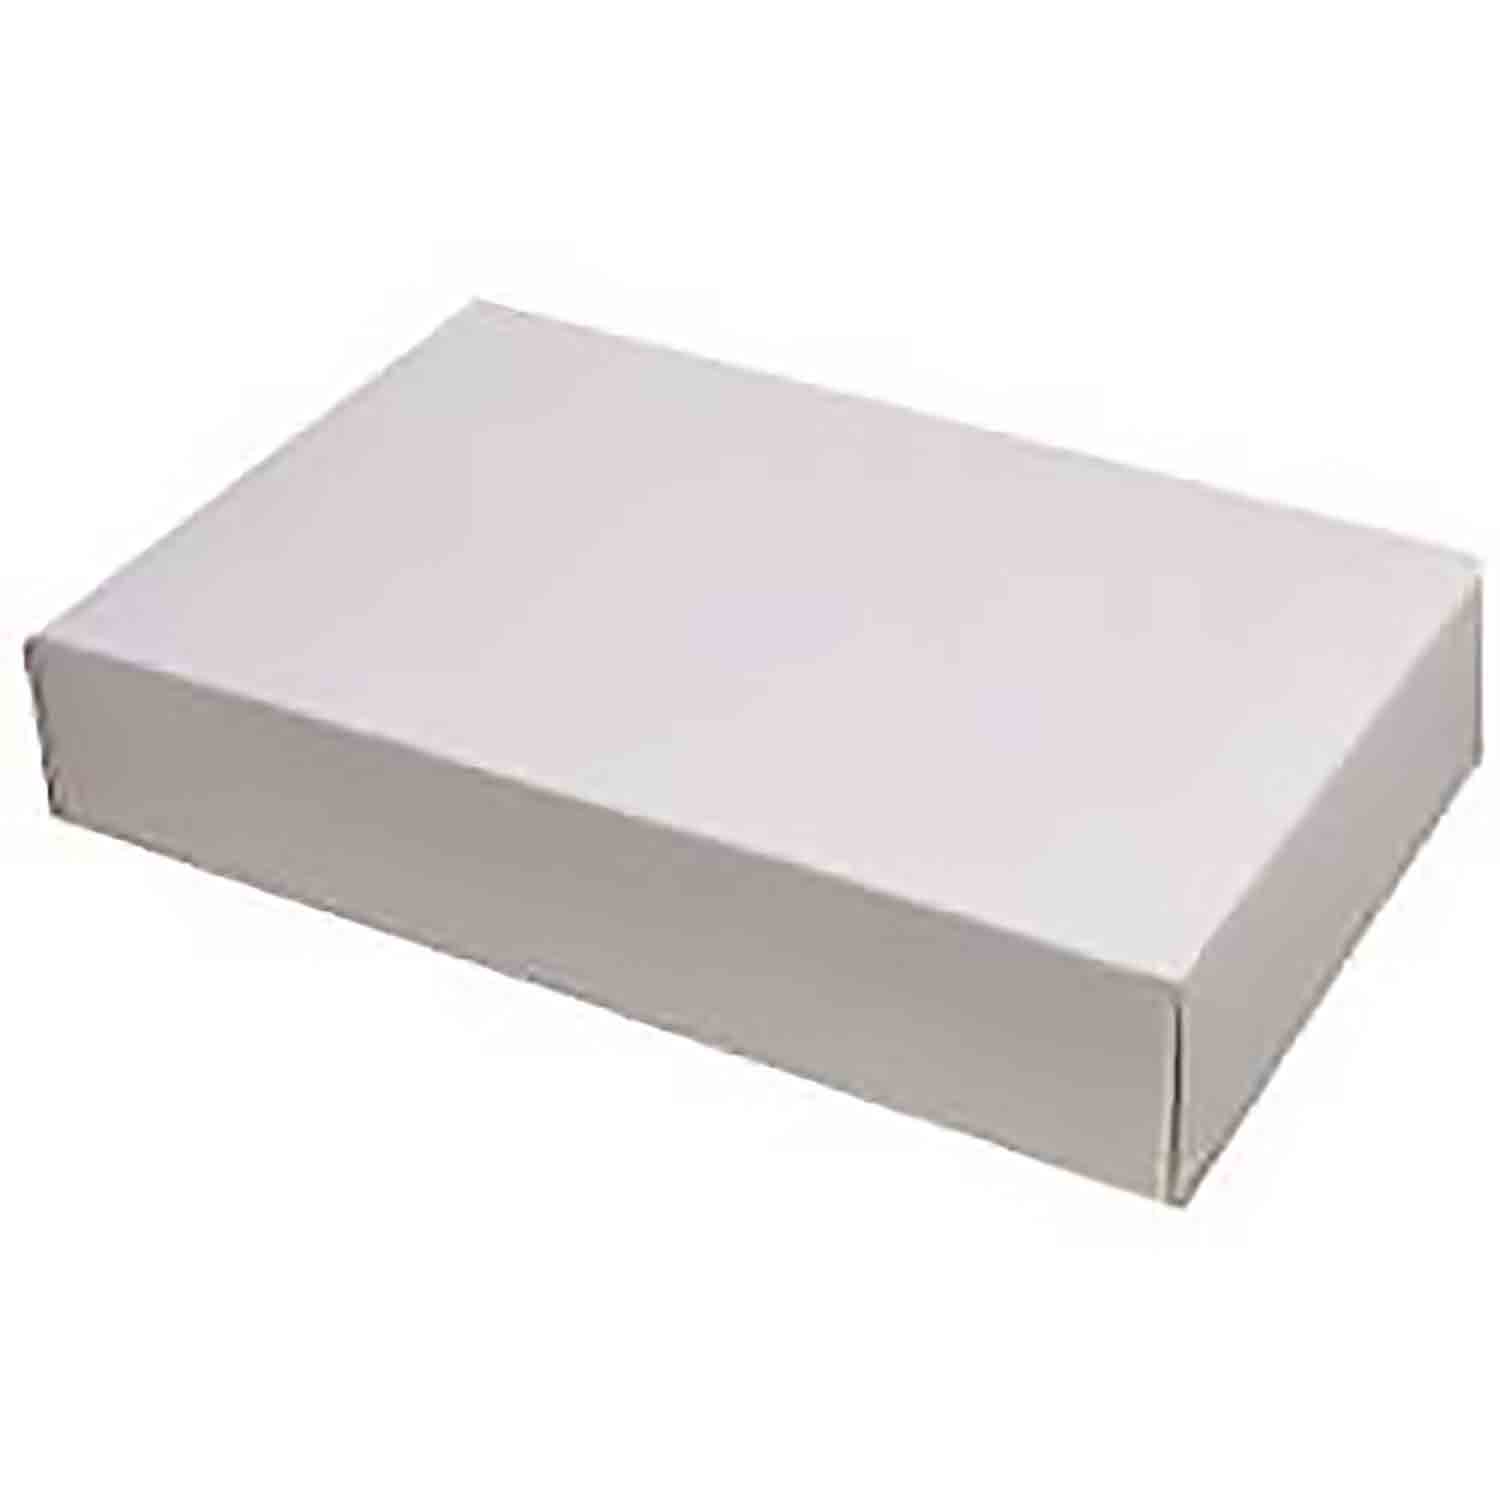 2 lb White 2-Layer Candy Box